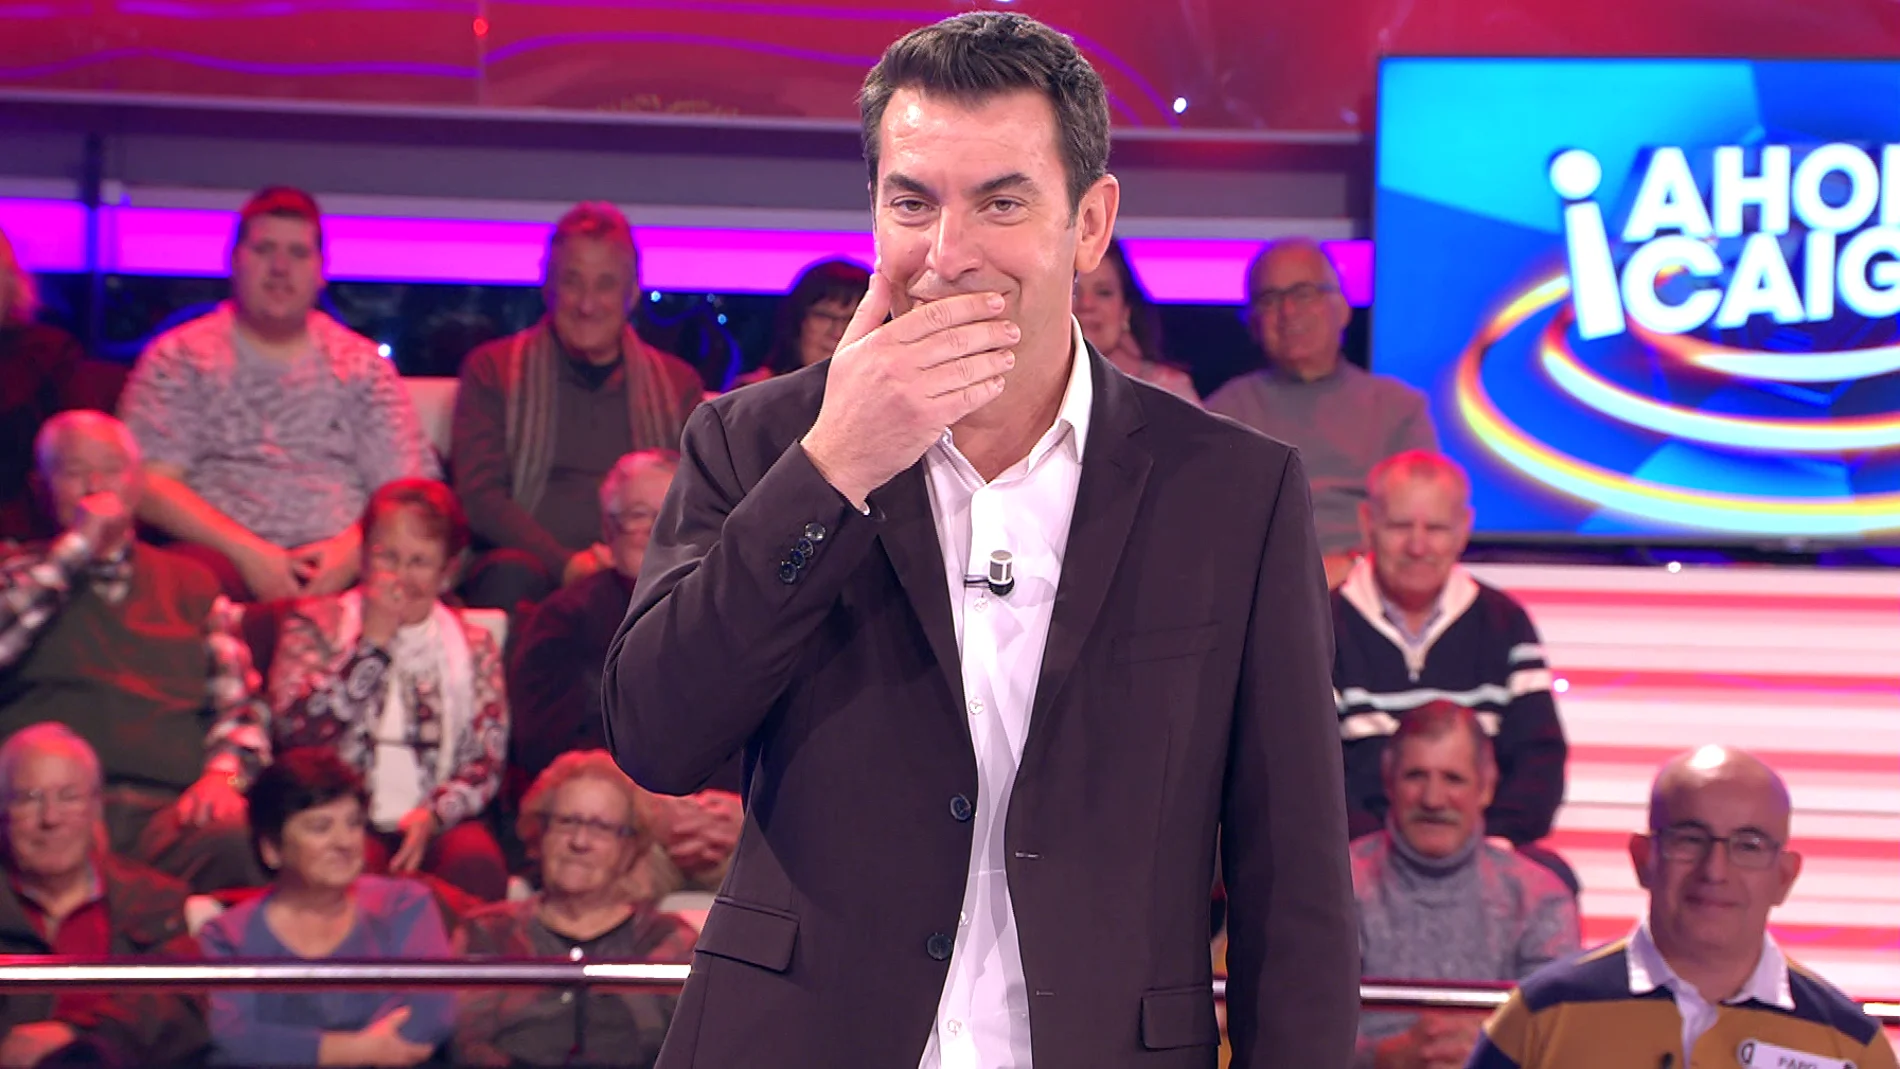 La inesperada reacción de Arturo Valls tras saber el apellido de una concursante en '¡Ahora caigo!' 